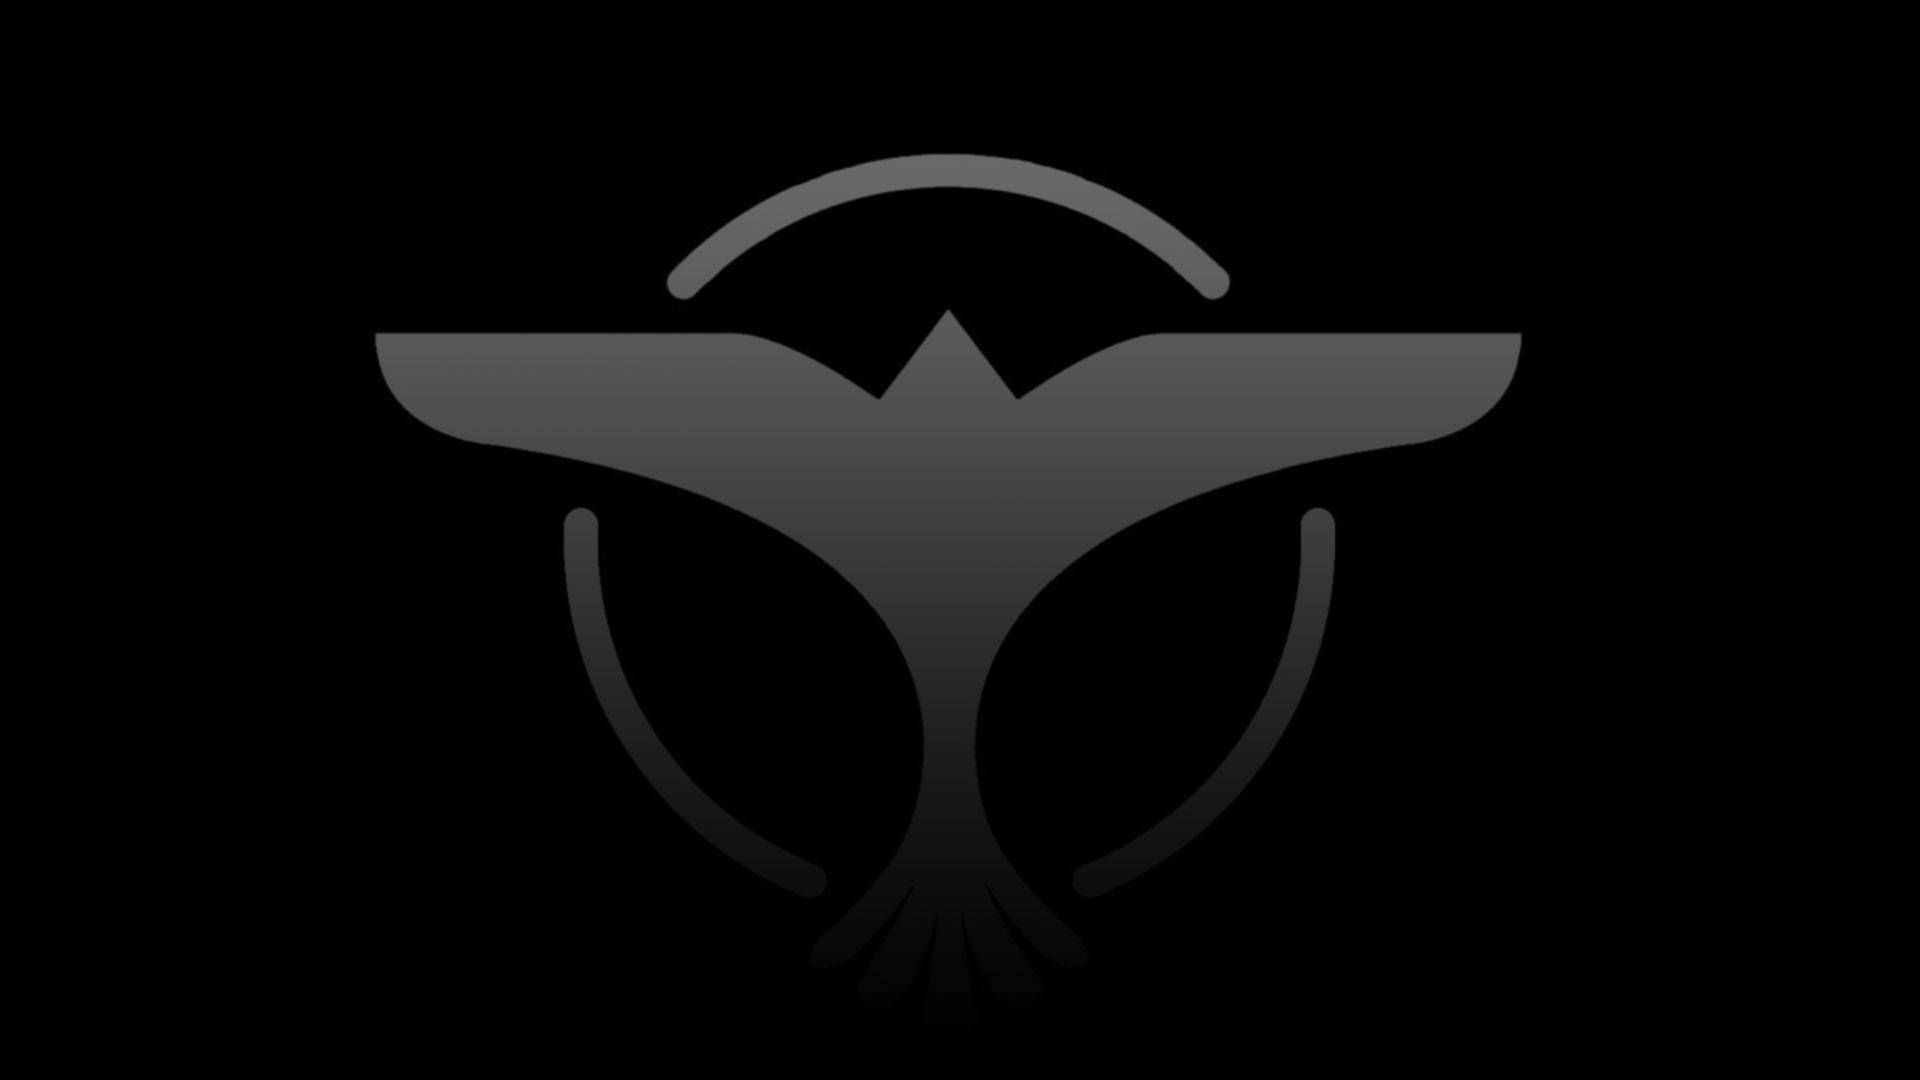  Tiesto Hintergrundbild 1920x1080. Download Dj Tiesto Bird Emblem Wallpaper